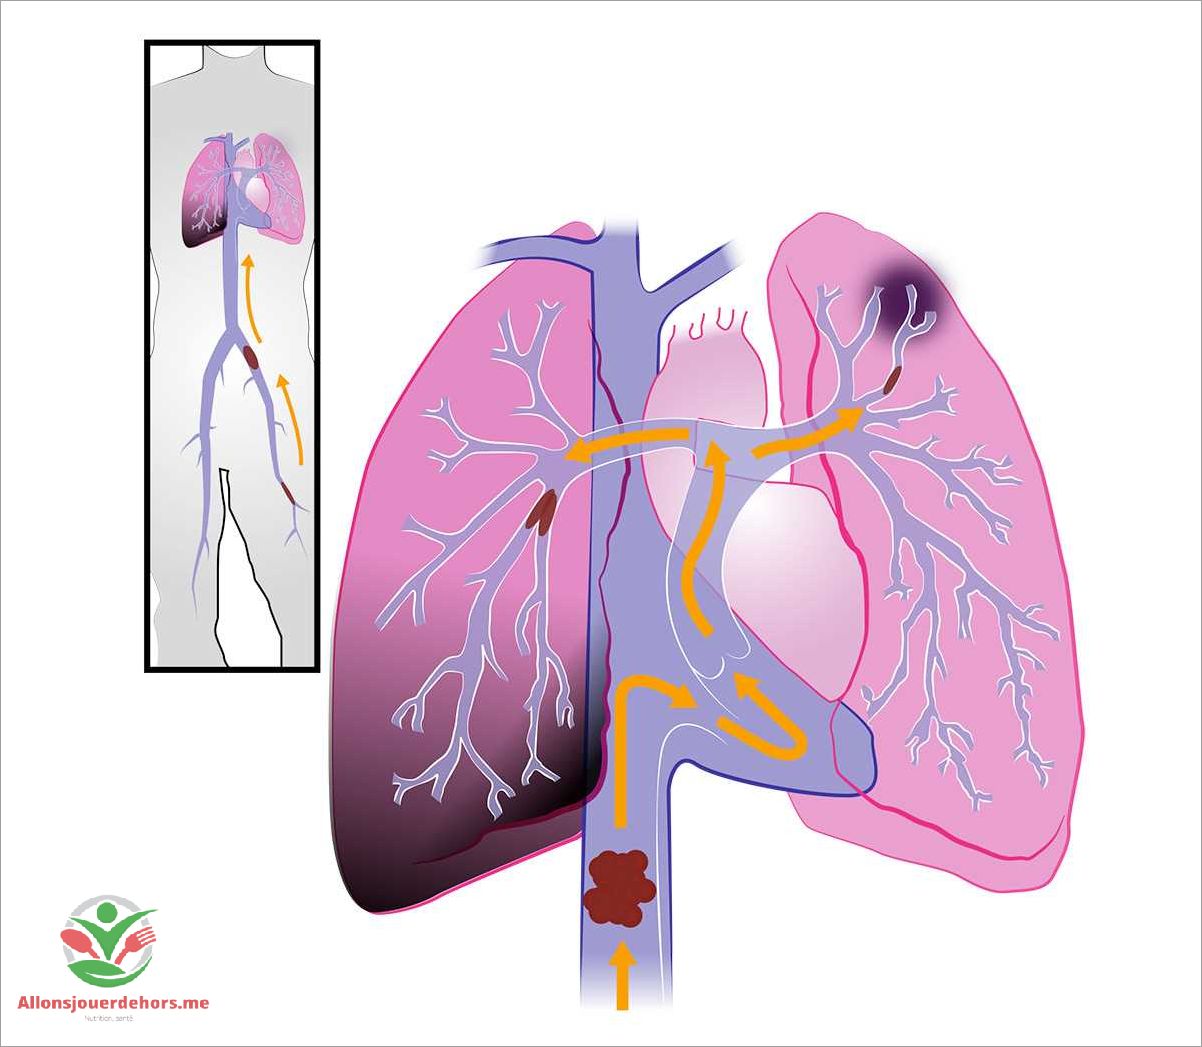 Facteurs de risque de l'embolie pulmonaire